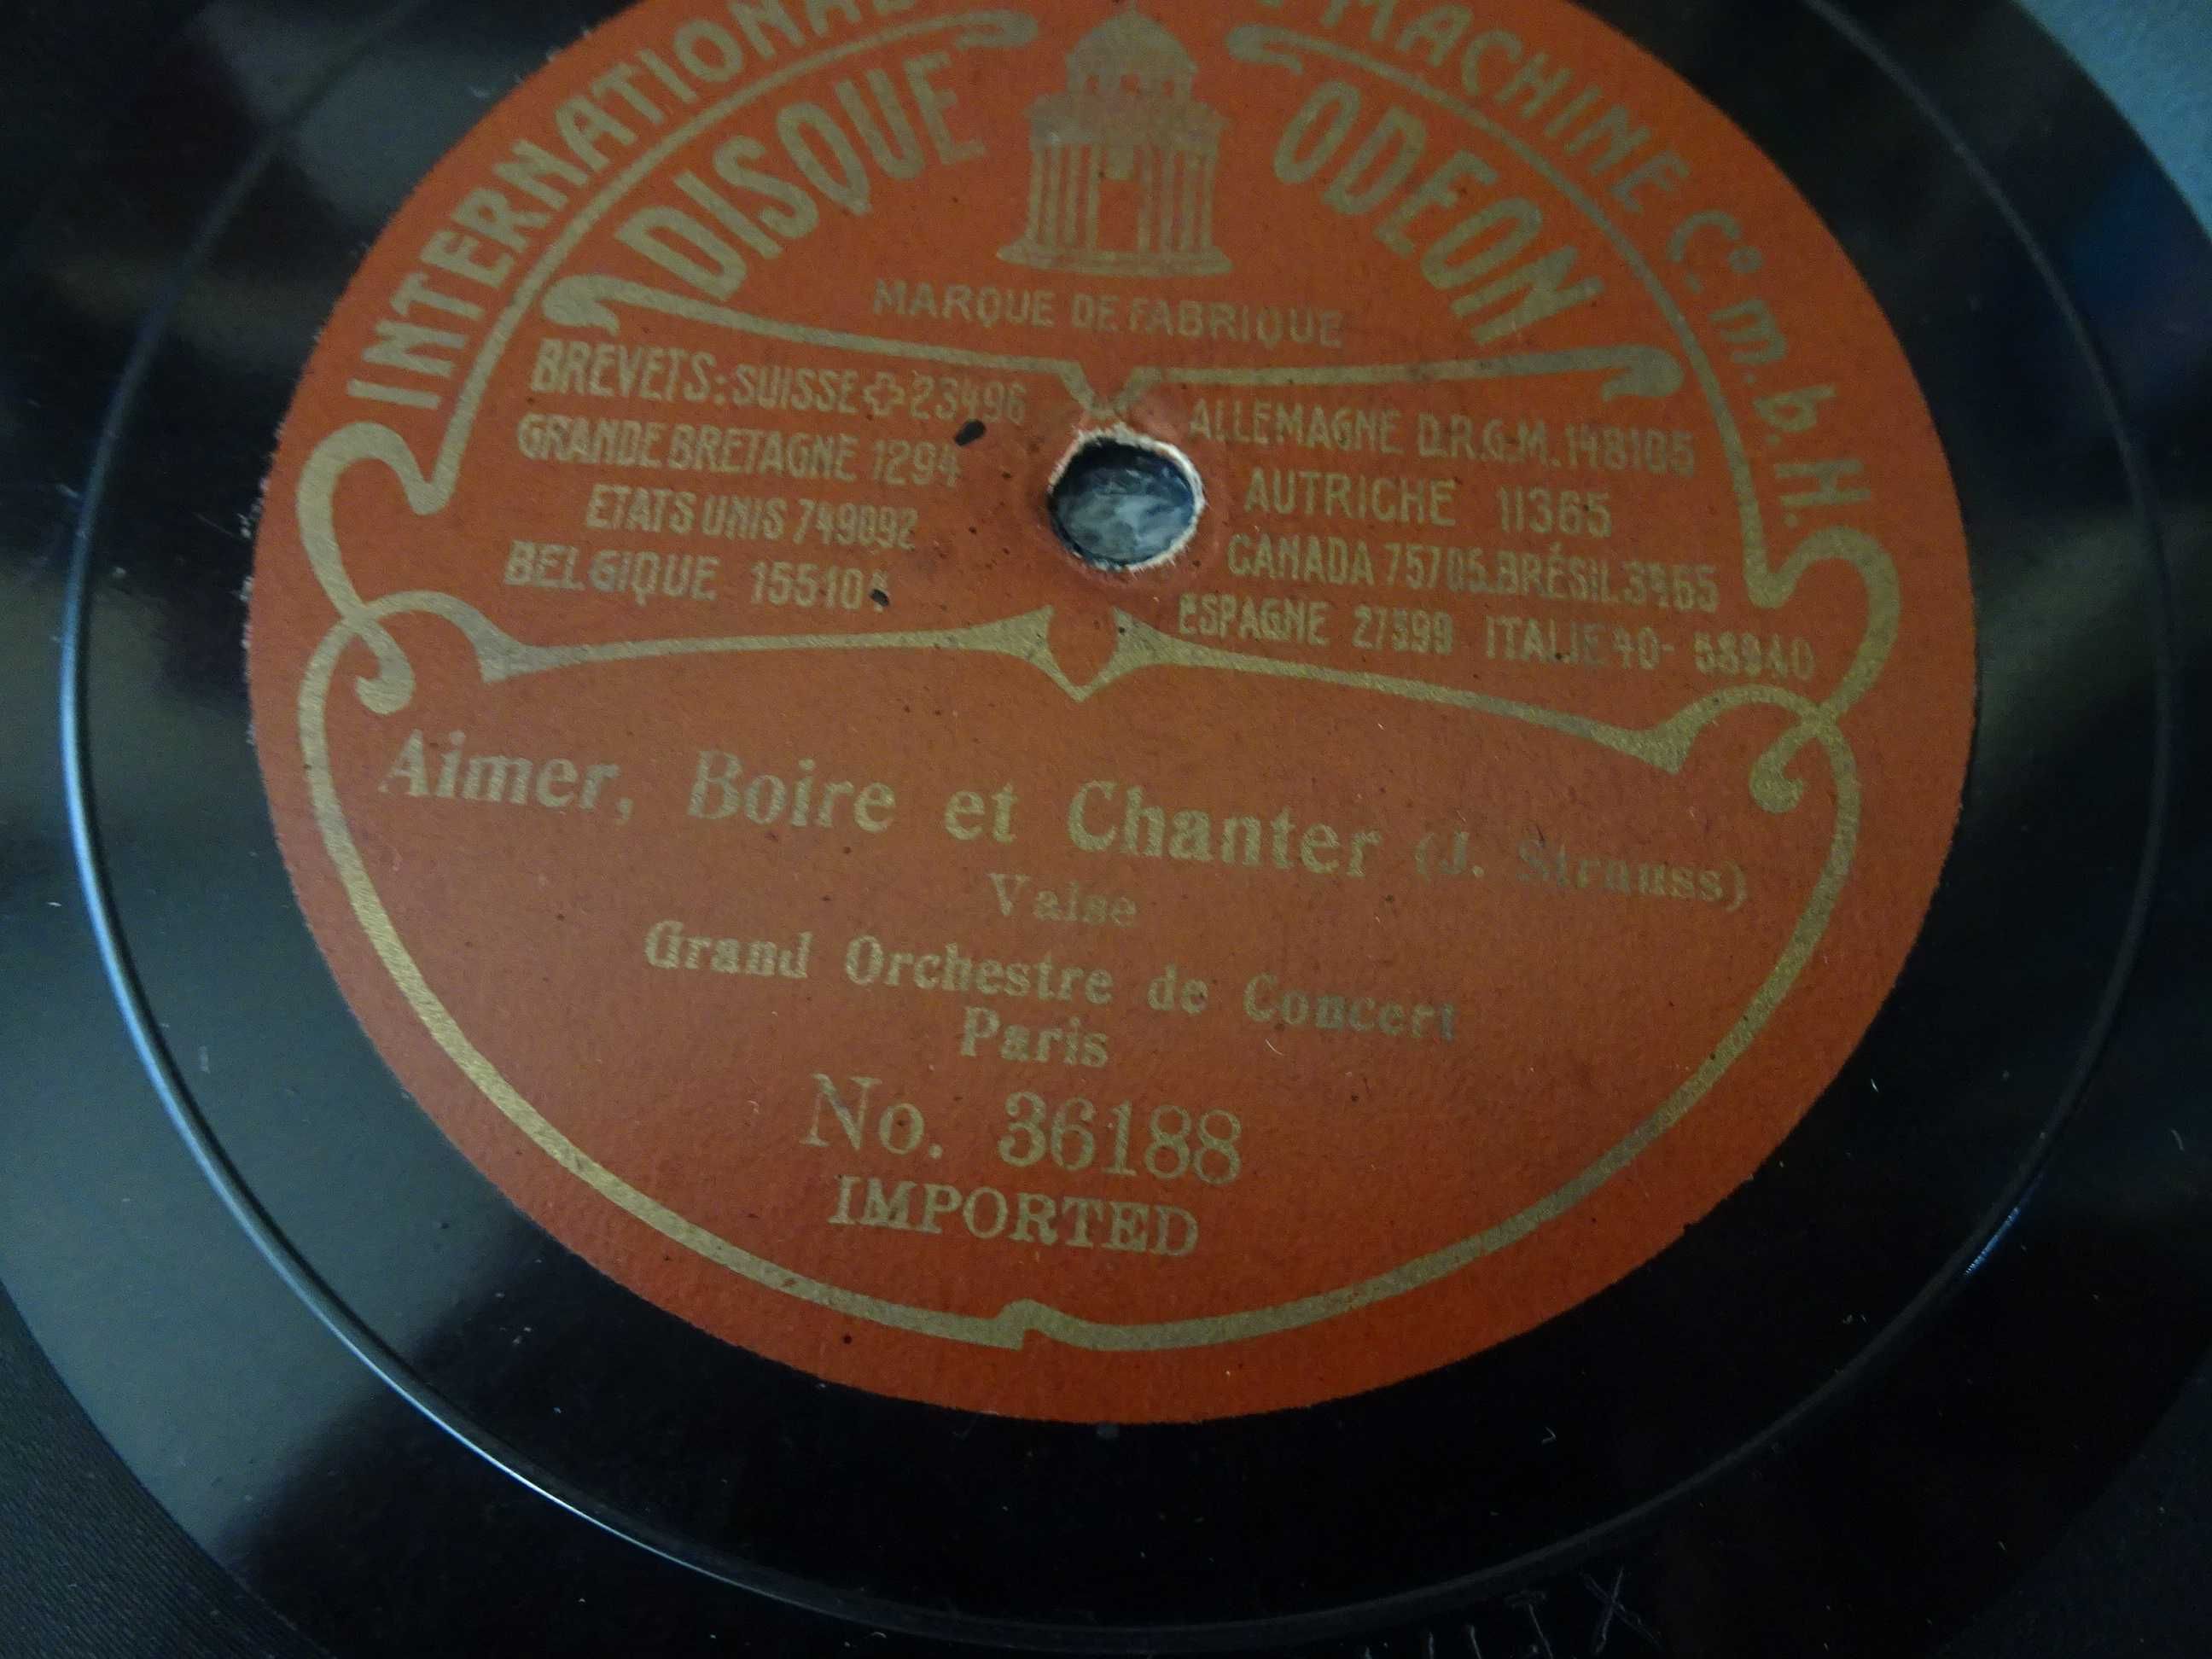 Disco grafonola Grand Orchestre de Concert - Aimer, Boire et Chanter